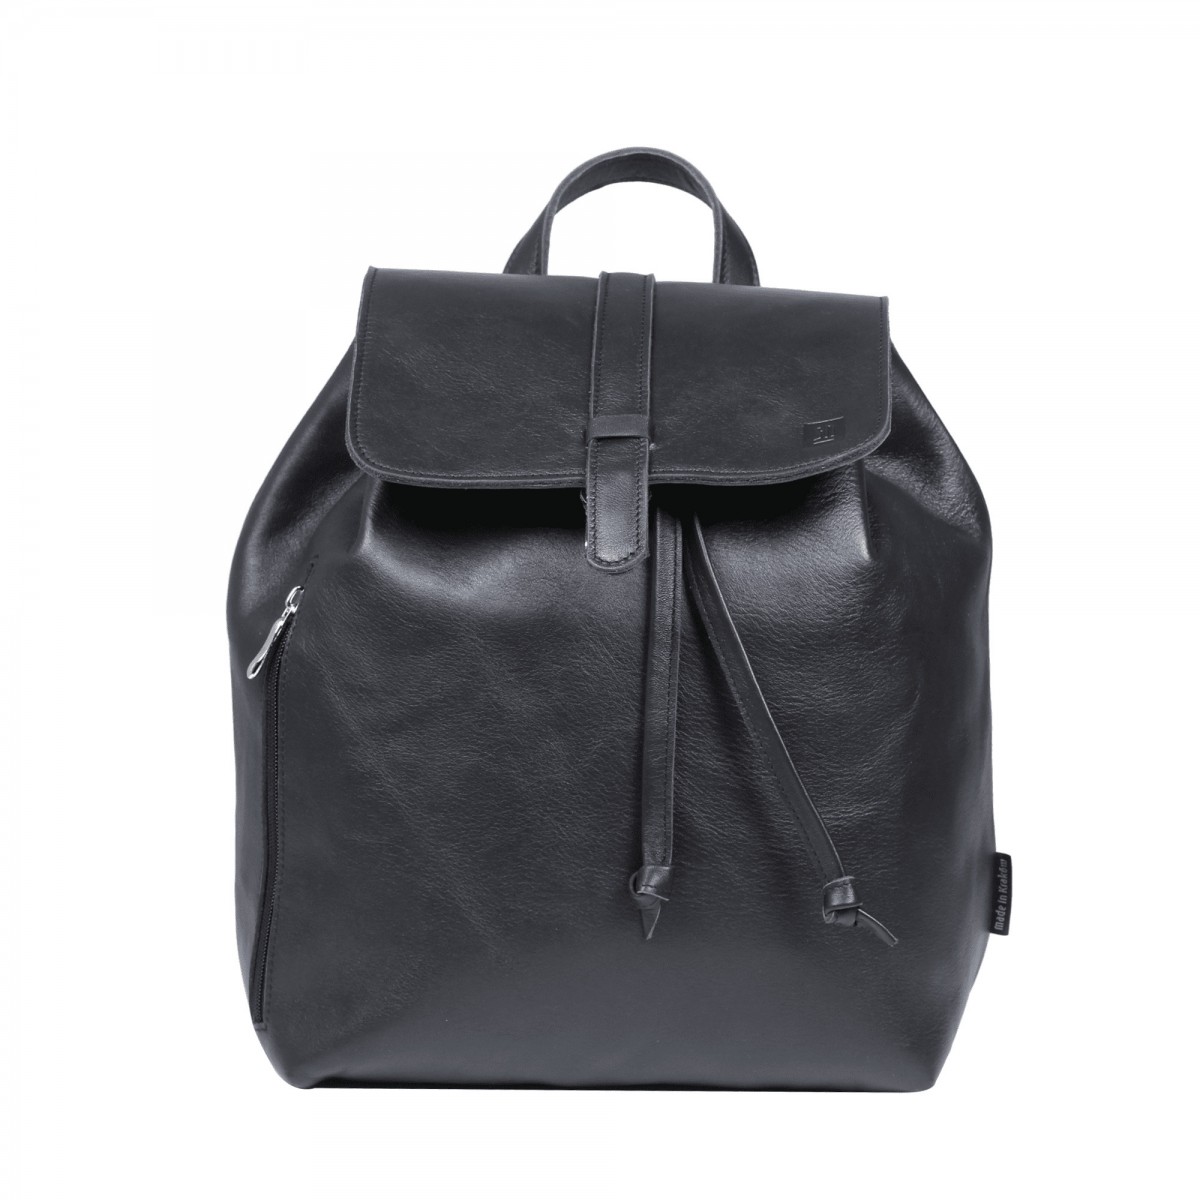 czarny plecak skorzany dasmki na ramie vintage esterka 00-207-0101-E10-111610.jpg